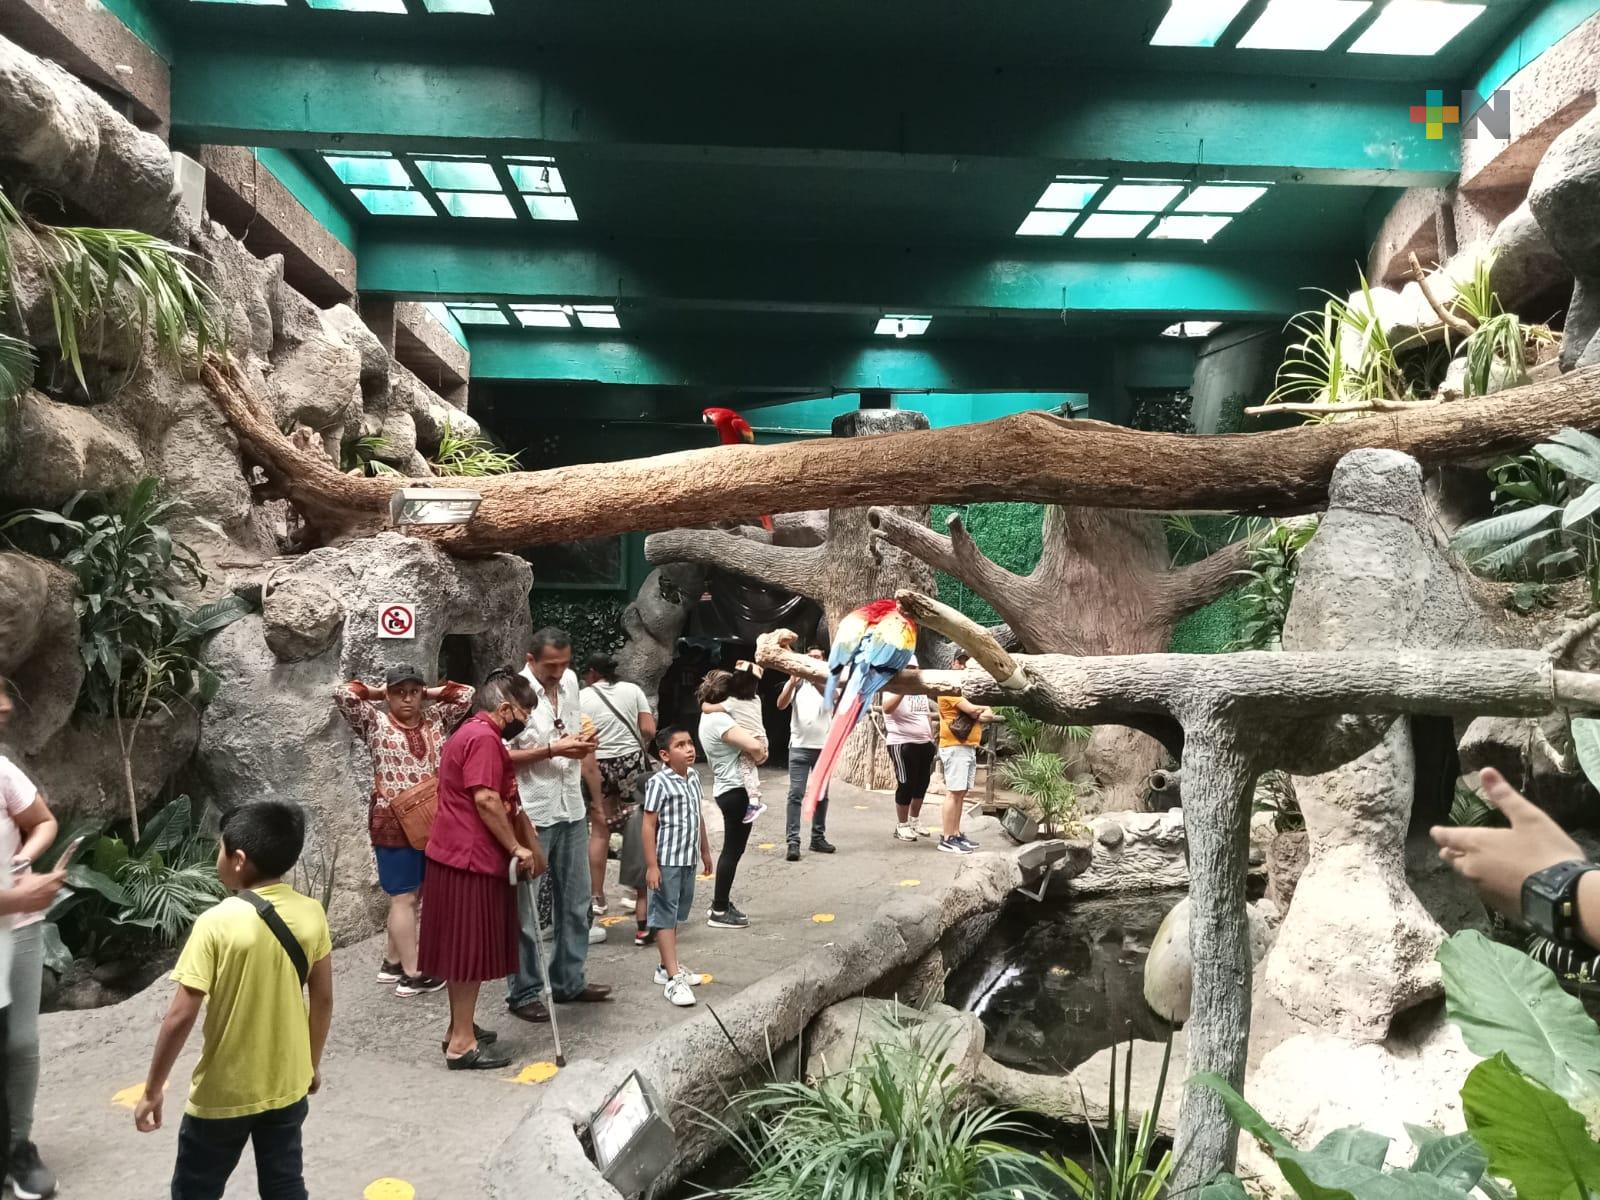 Entradas gratuitas al Aquarium de Veracruz  están agotadas: Gobernador